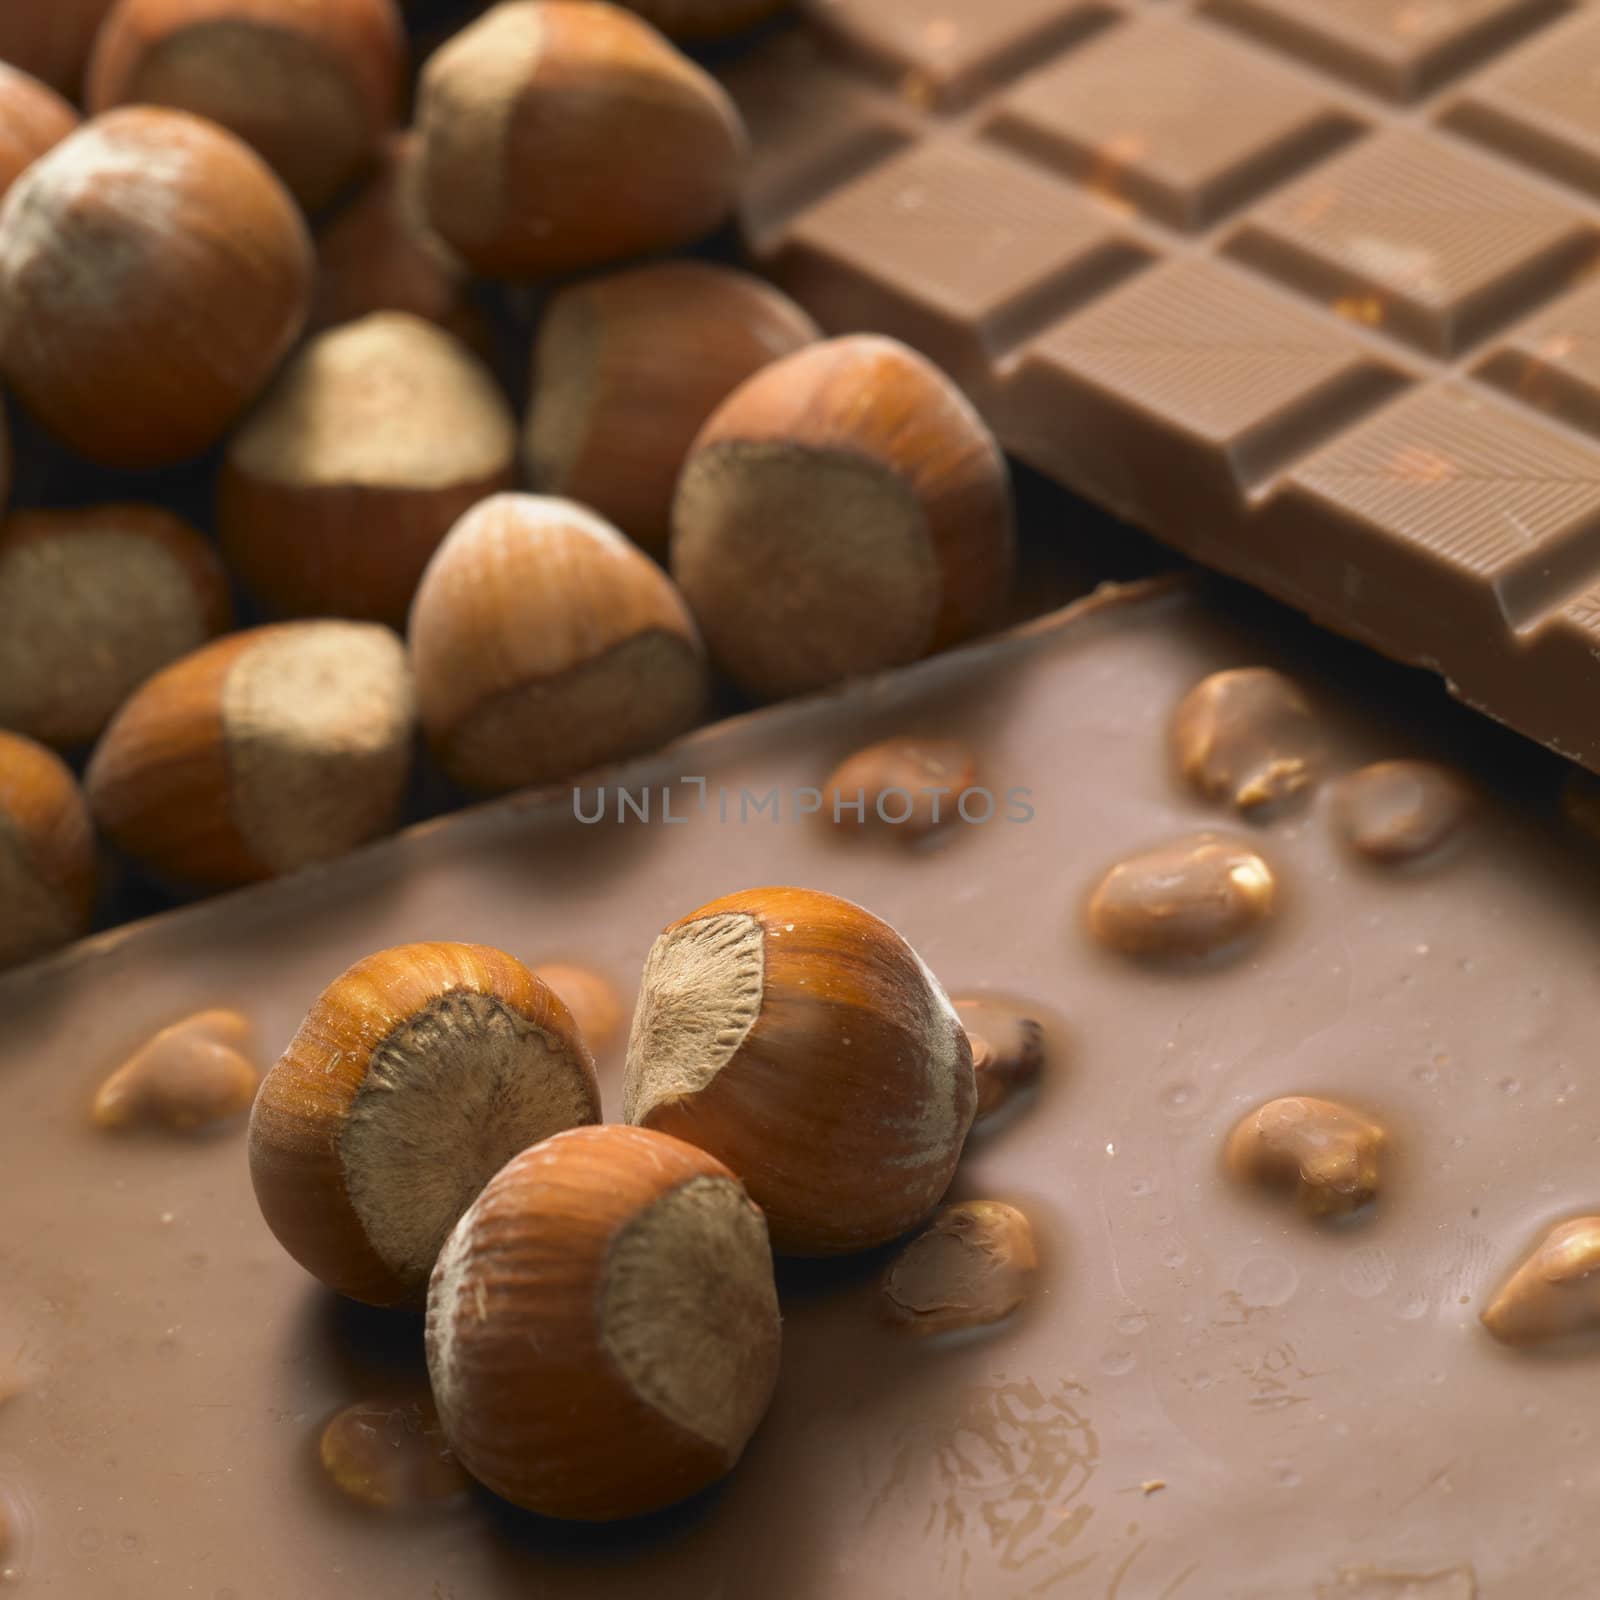 chocolate bars with hazelnuts by phbcz